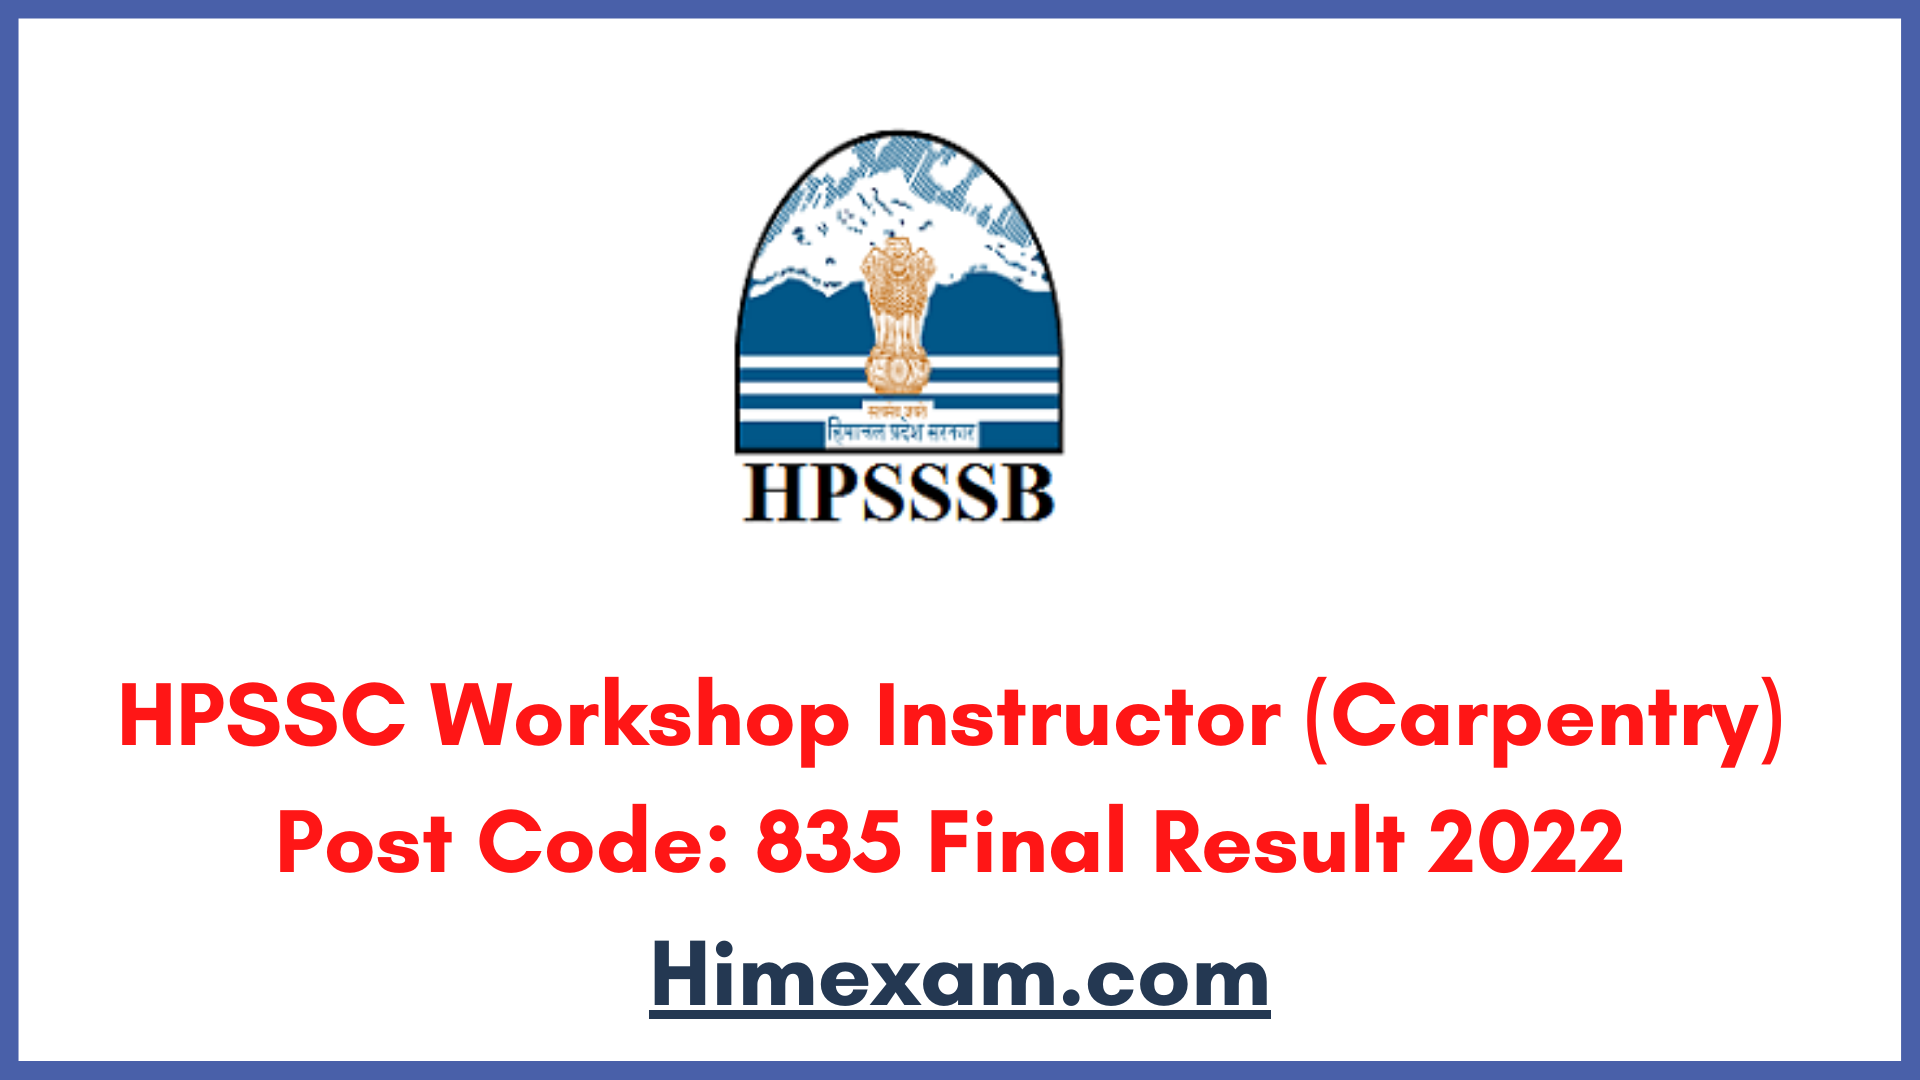 HPSSC Workshop Instructor (Carpentry) Post Code: 835 Final Result 2022